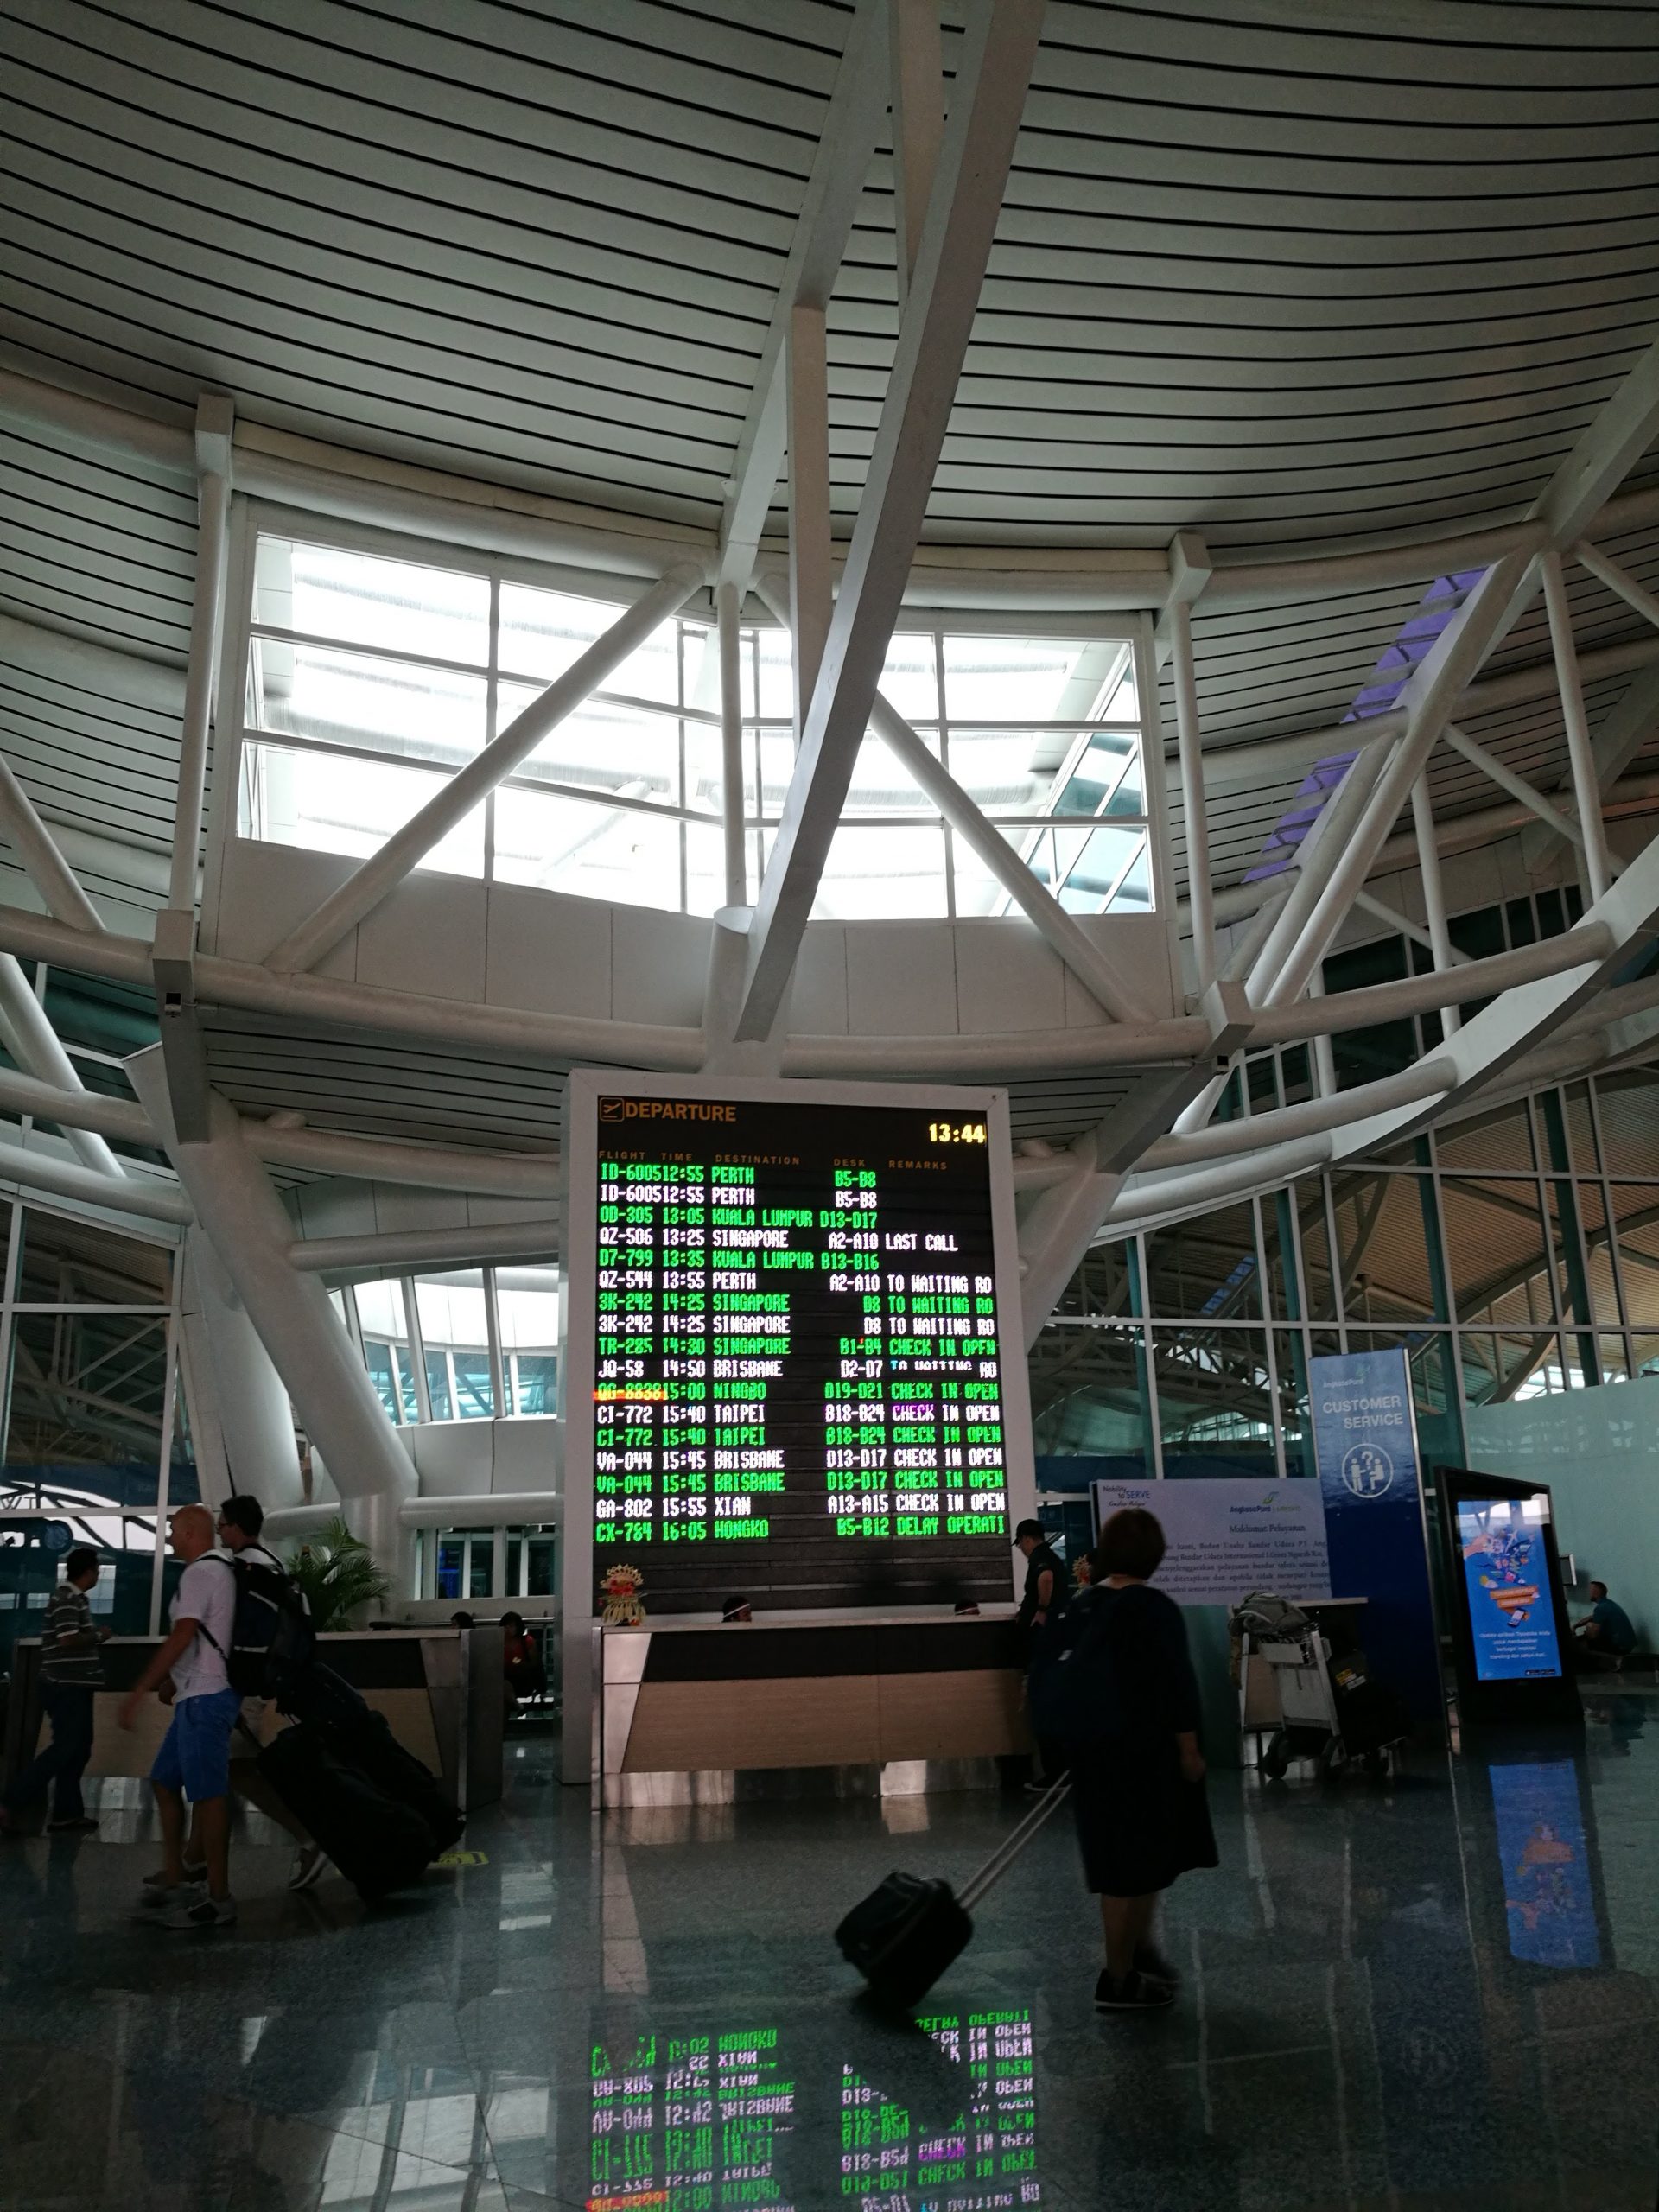 デンパサール国際空港のフライトインフォメーション掲示板